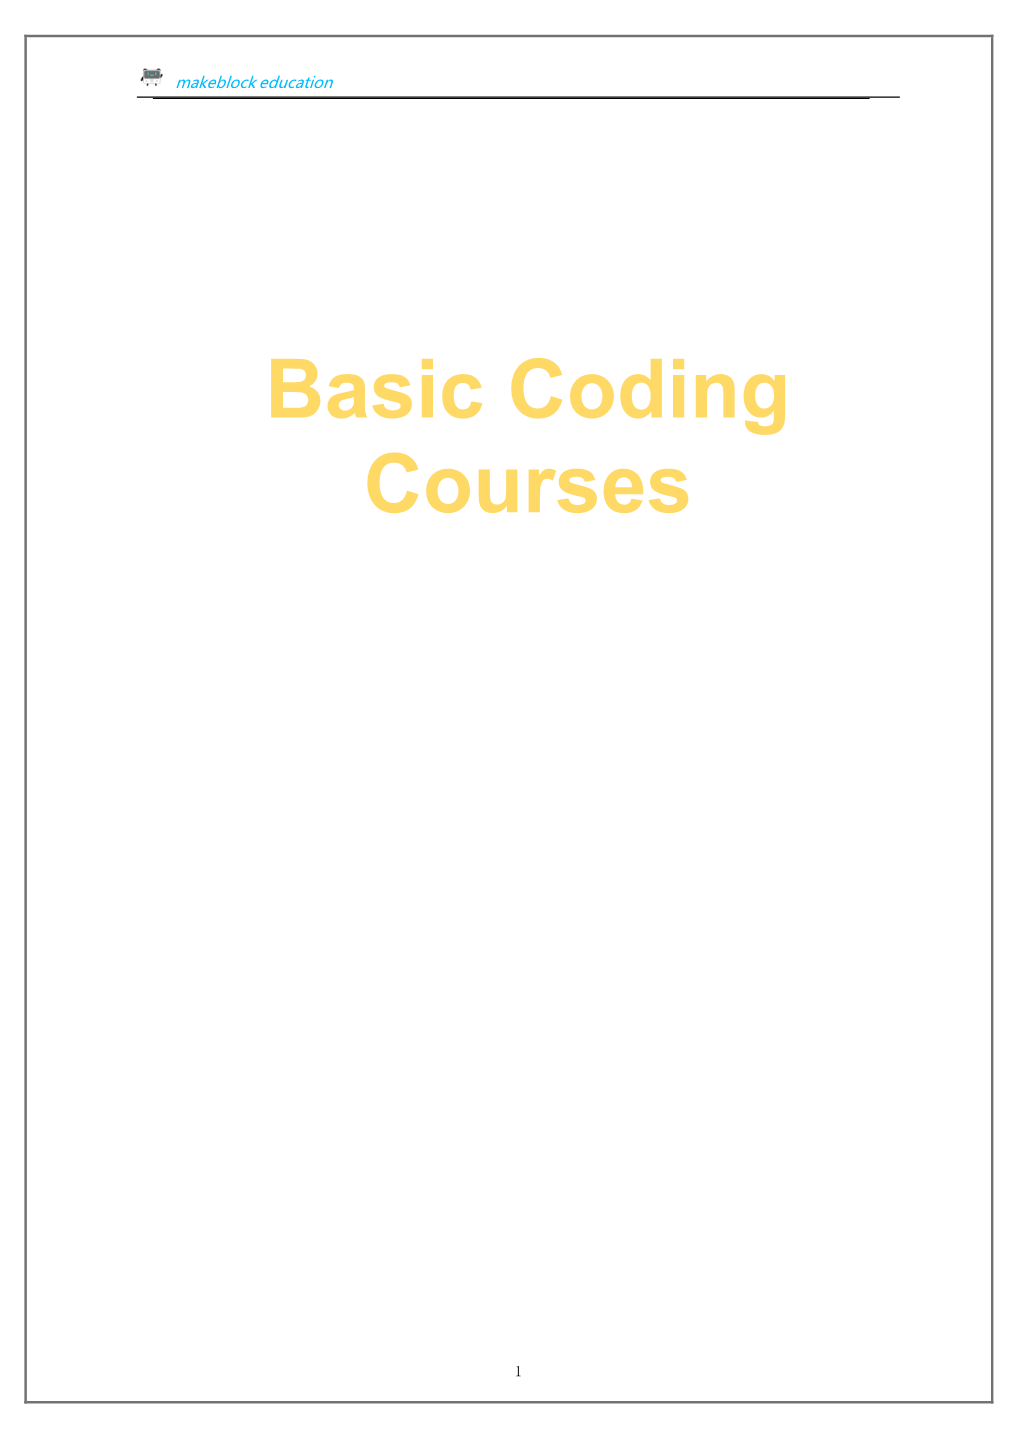 Basic Coding Courses